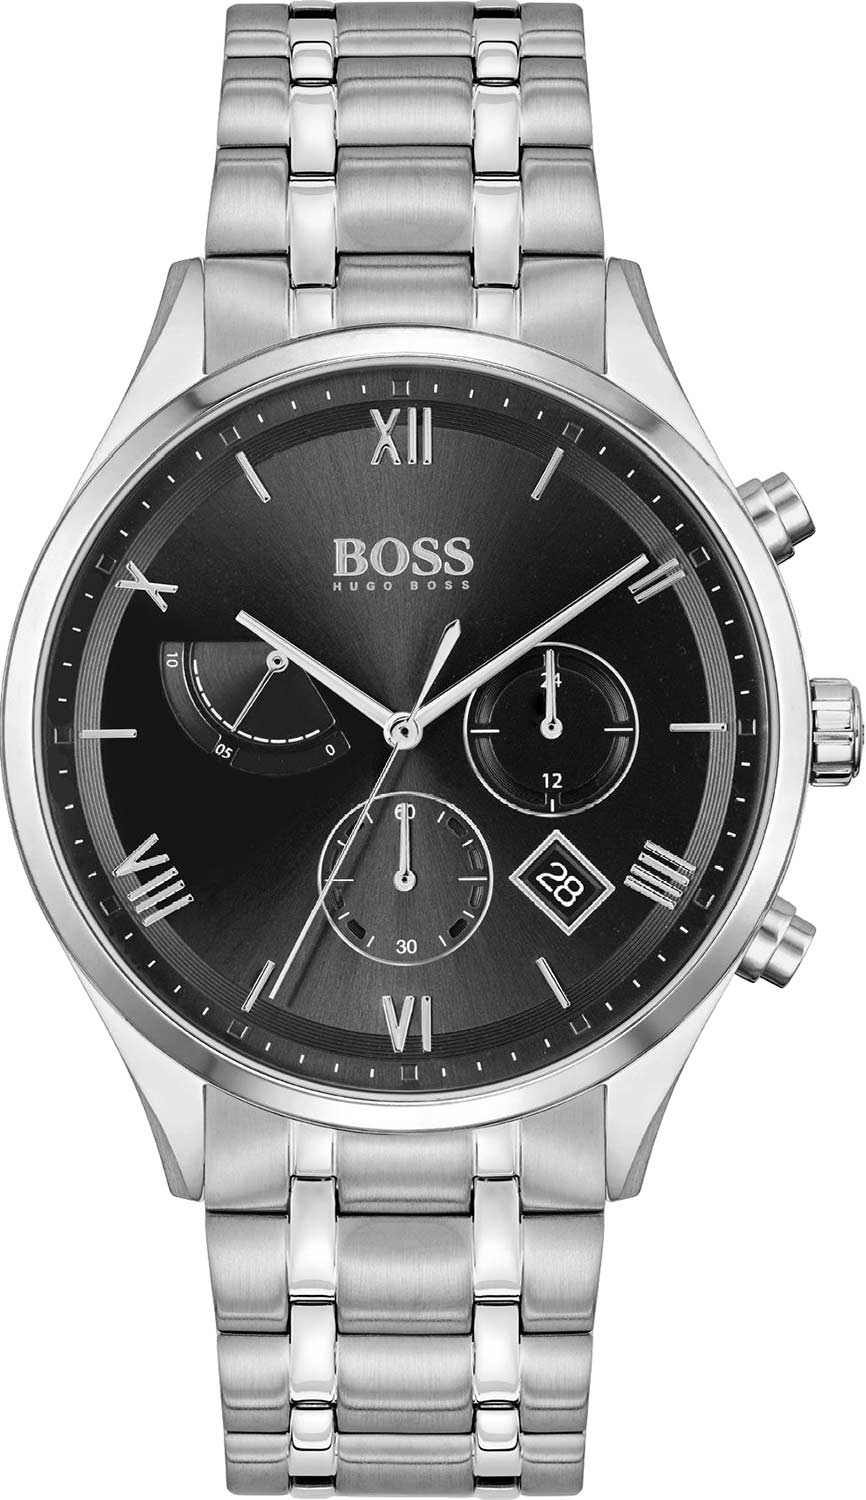   Hugo Boss HB1513891  